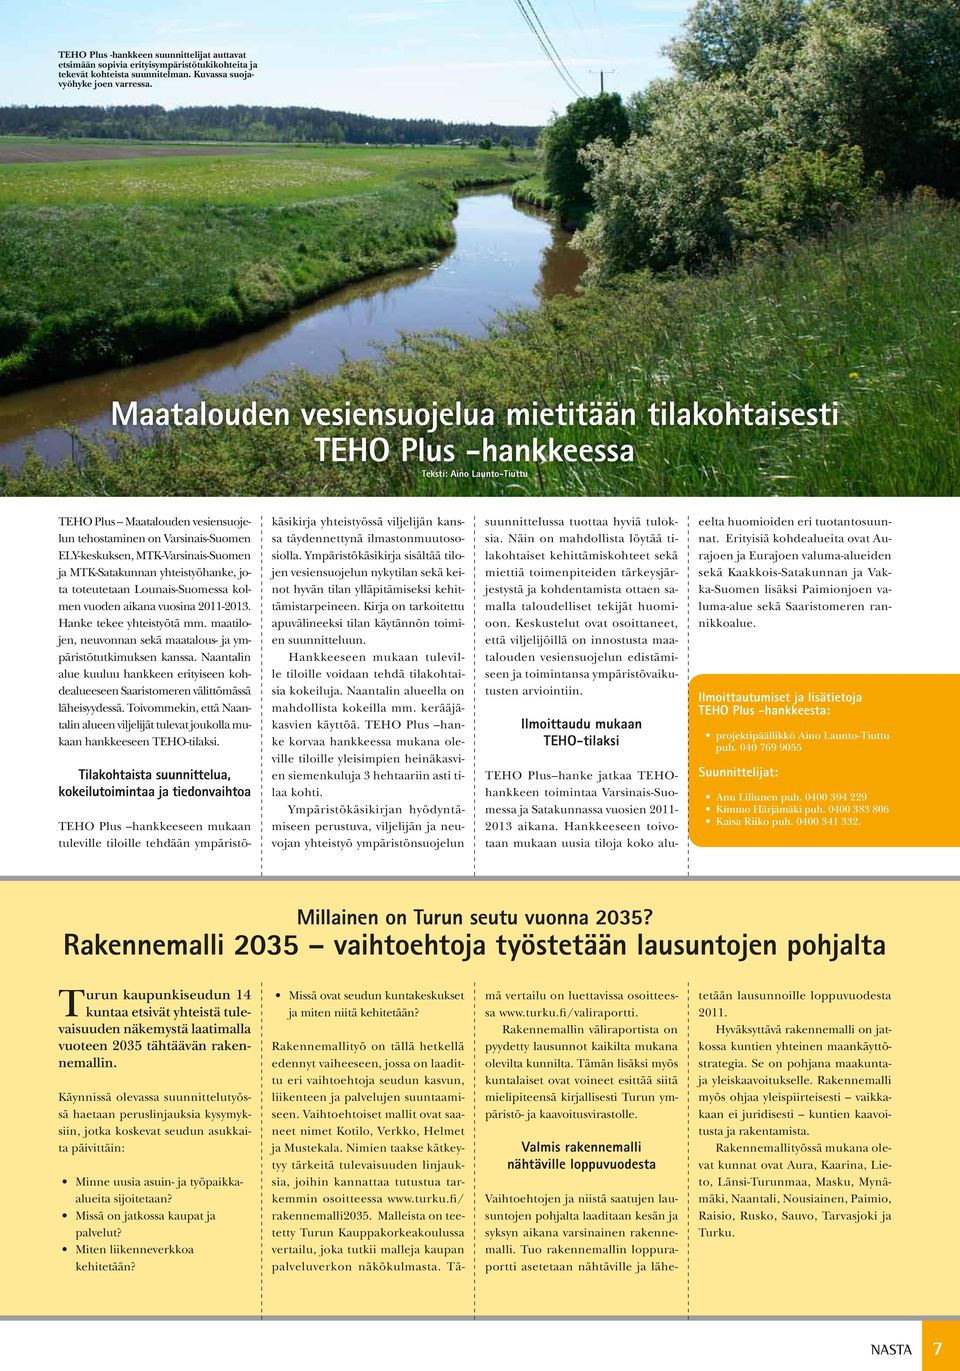 MTK-Varsinais-Suomen ja MTK-Satakunnan yhteistyöhanke, jota toteutetaan Lounais-Suomessa kolmen vuoden aikana vuosina 2011-2013. Hanke tekee yhteistyötä mm.